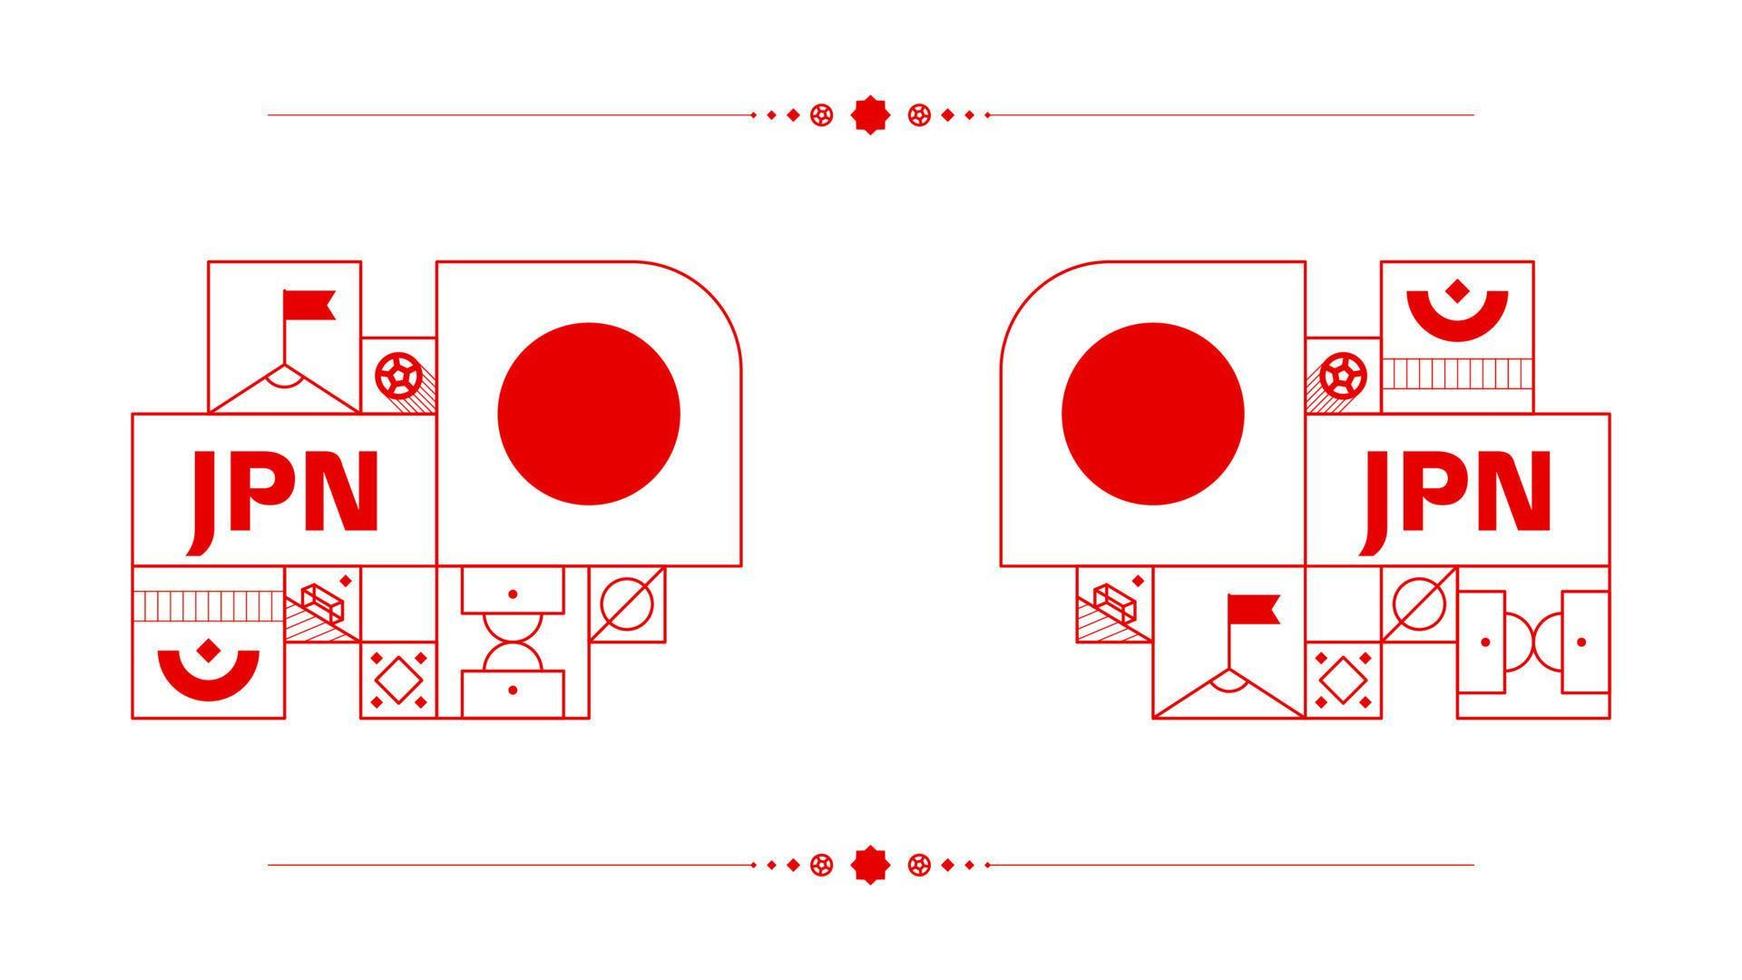 japan flagga för 2022 fotboll kopp turnering. isolerat nationell team flagga med geometrisk element för 2022 fotboll eller fotboll vektor illustration